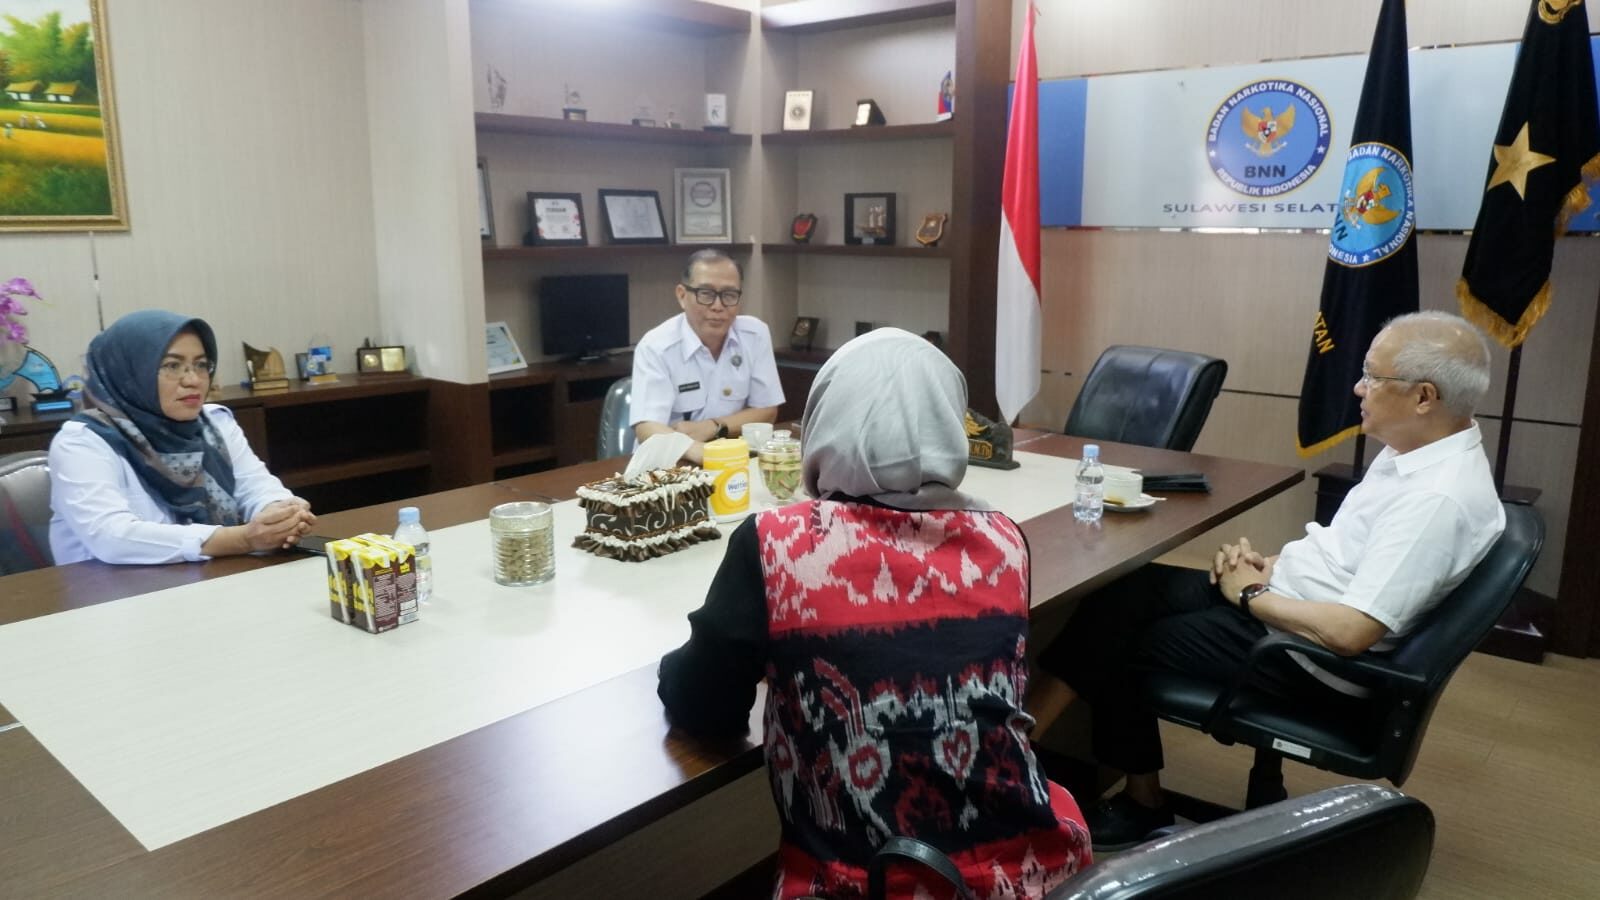 Kepala BNNP Sulawesi Selatan Menerima Kunjungan Jajaran PT.Huadi Indonesia Grup